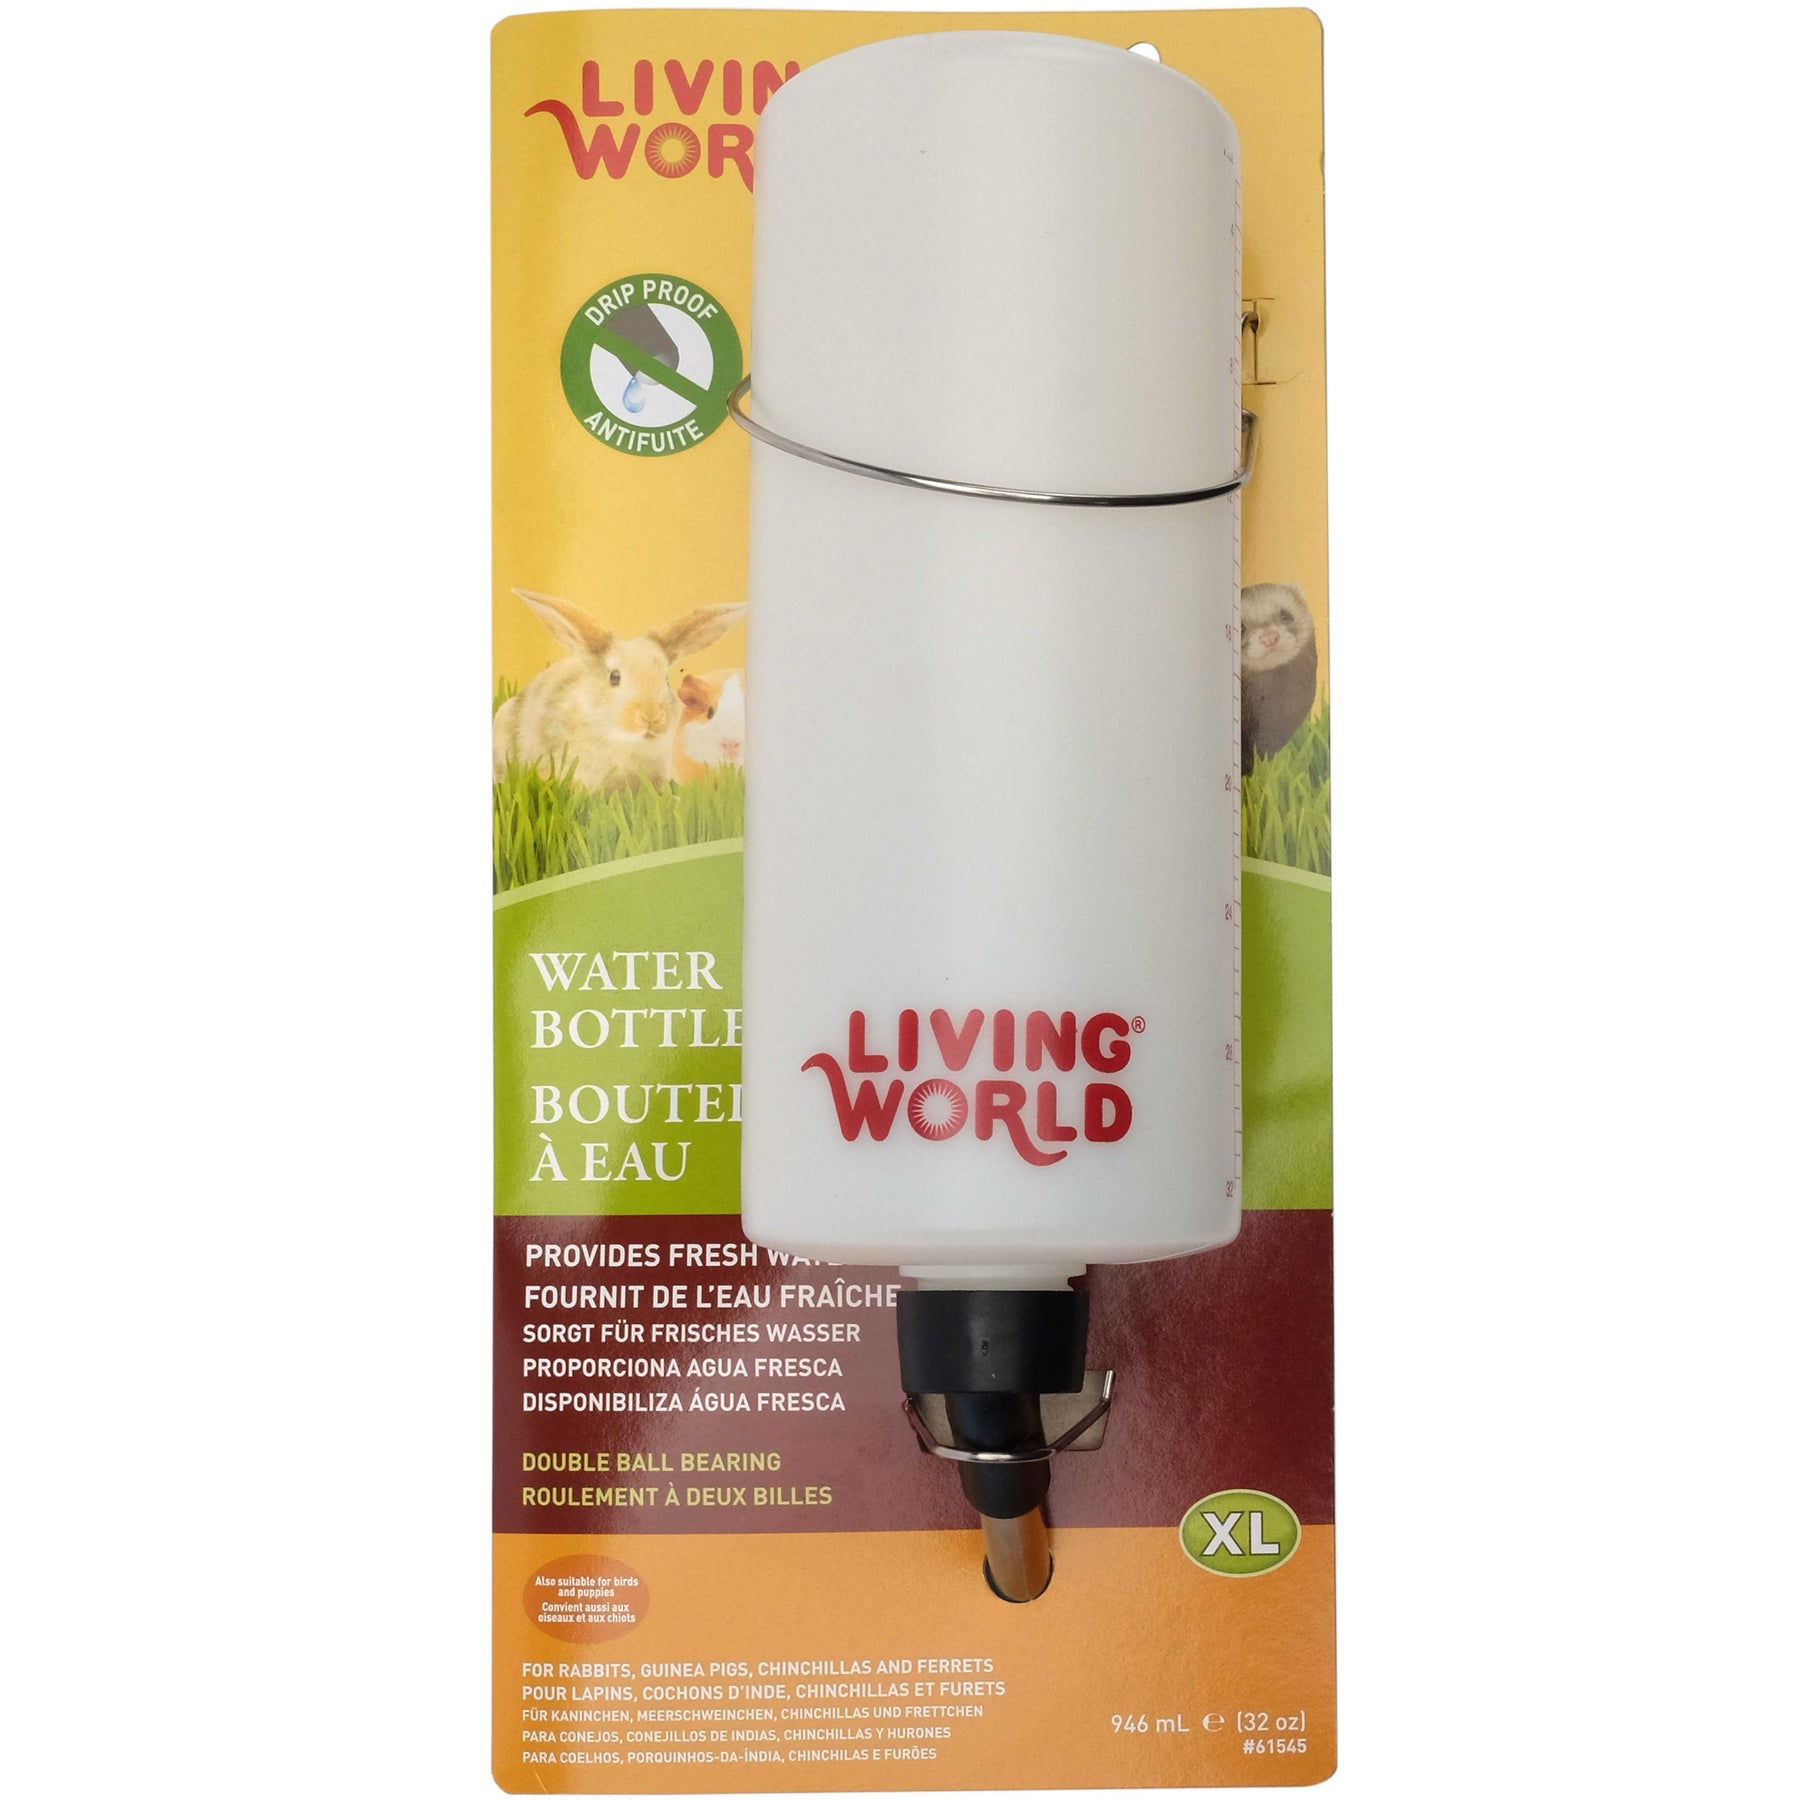 Living World Water Bottle